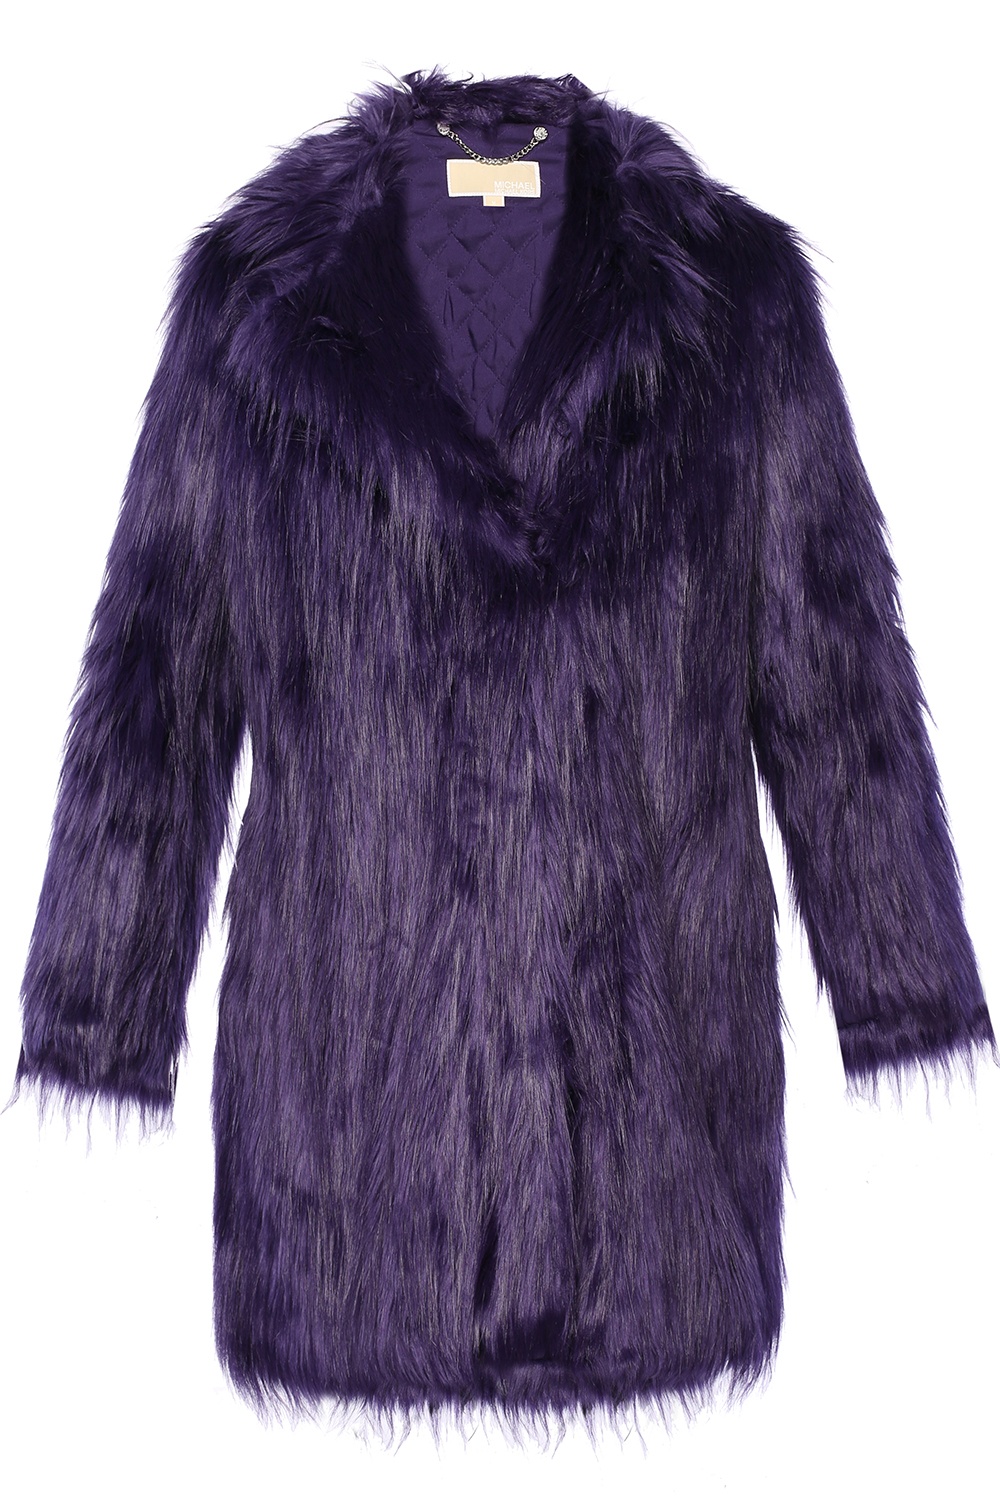 michael kors purple fur coat